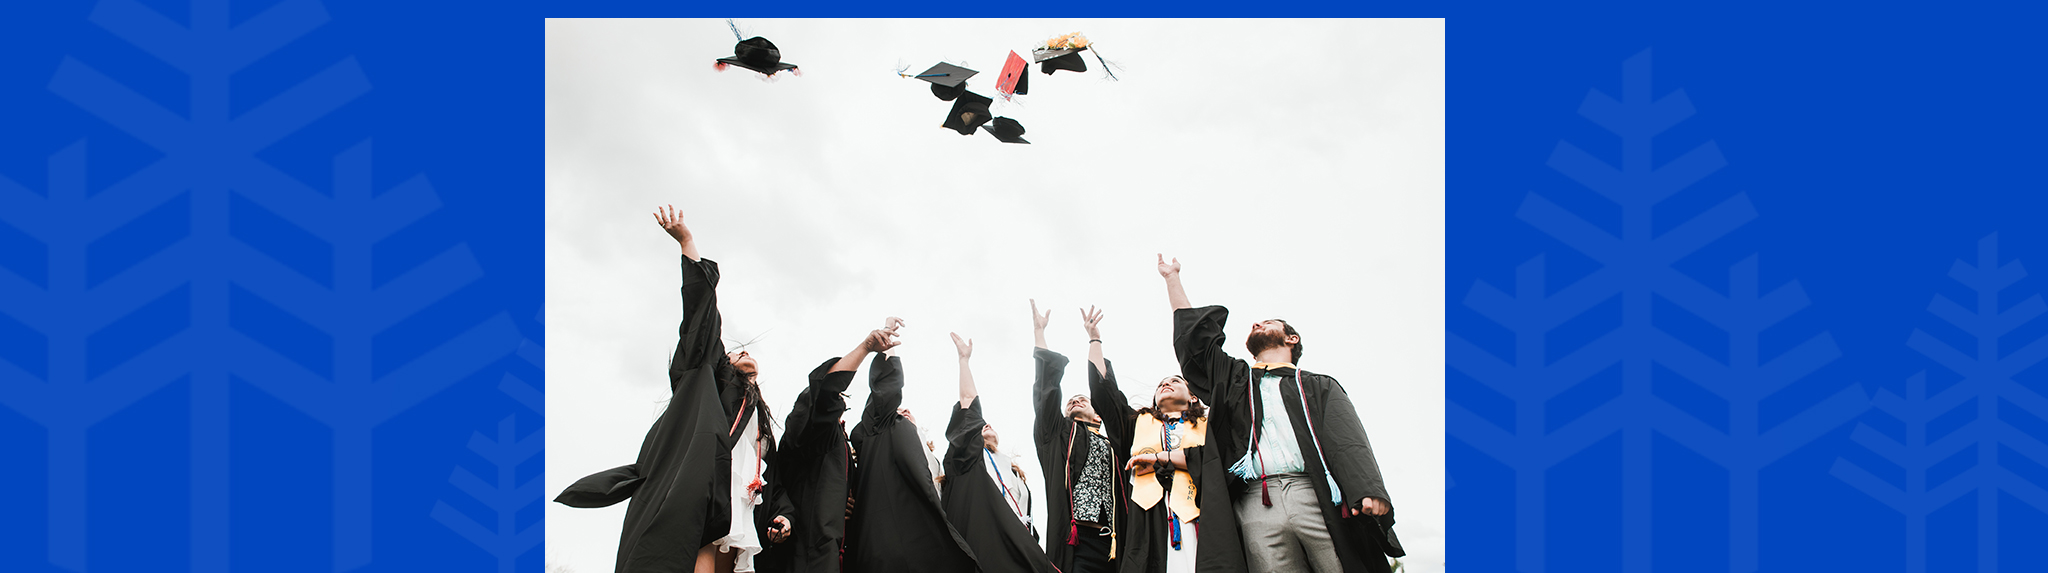 graduates toss caps in the air